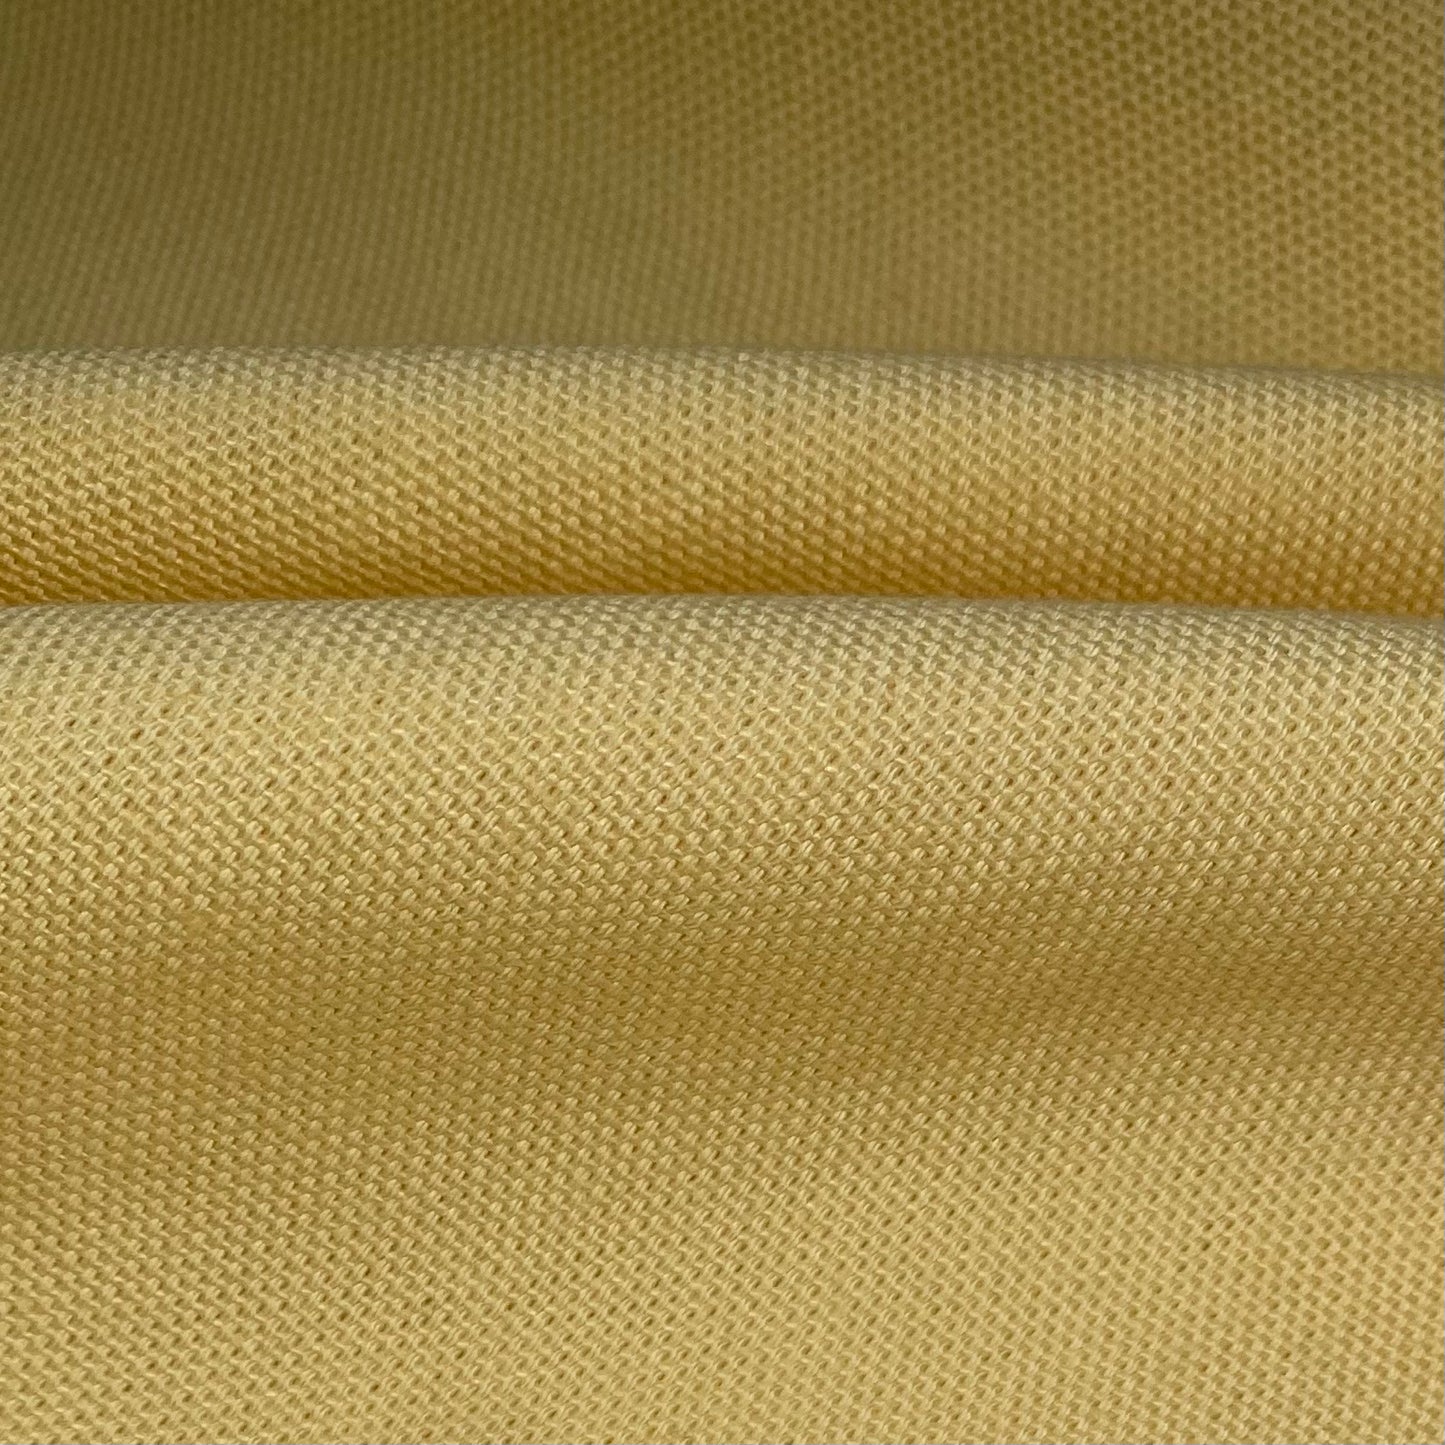 Cotton Duck Canvas - 8oz - Pale Yellow